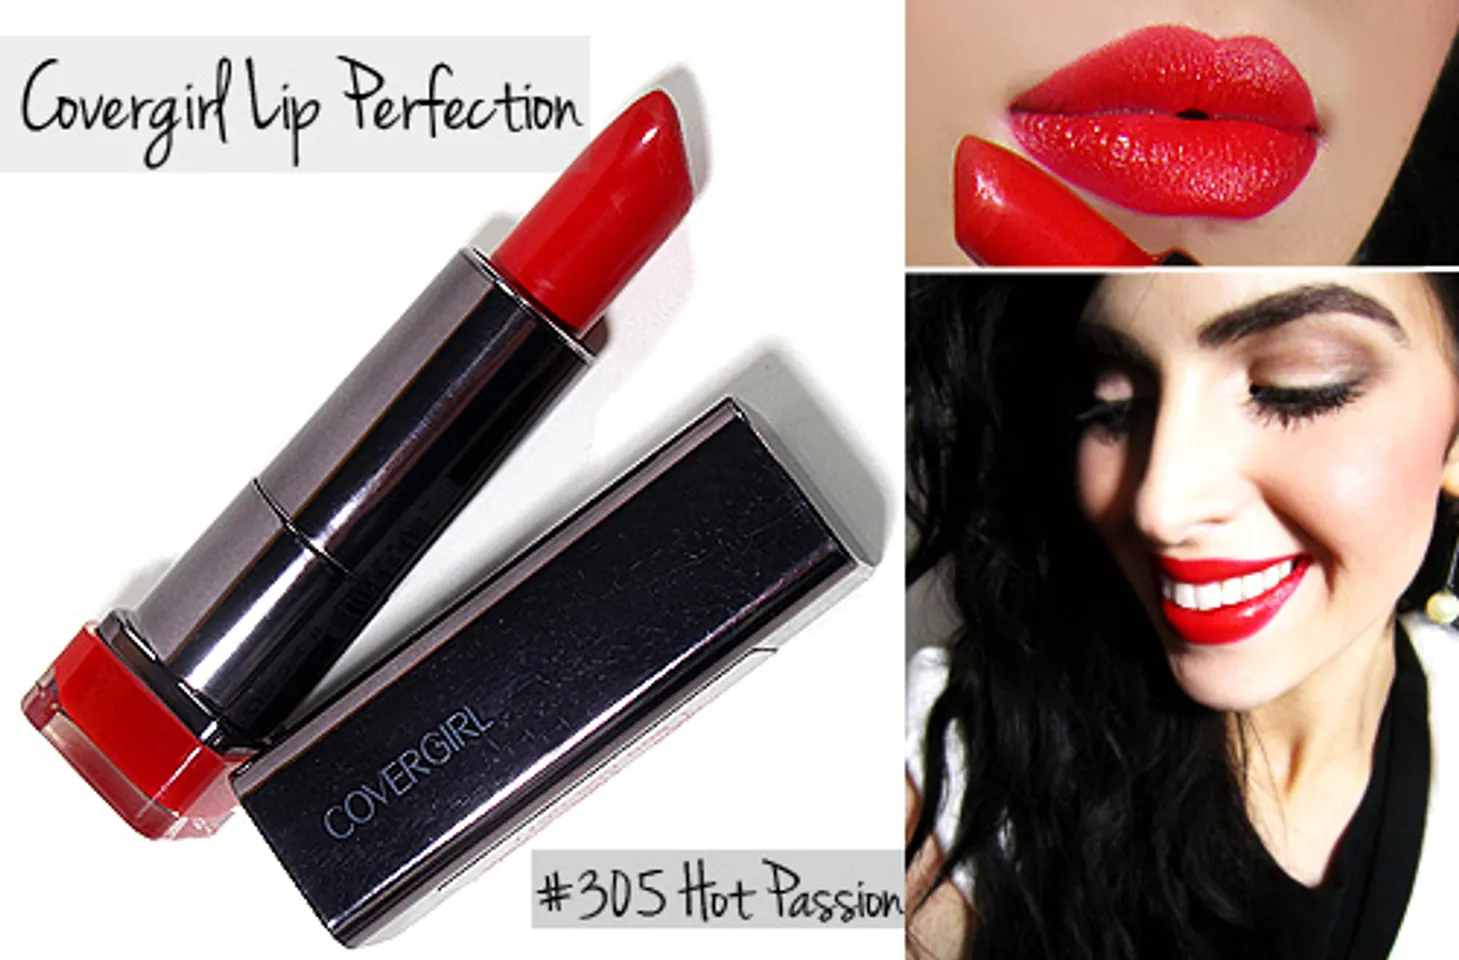 Son Cover girl Lip Perfection Lipstick chứa Protein 3